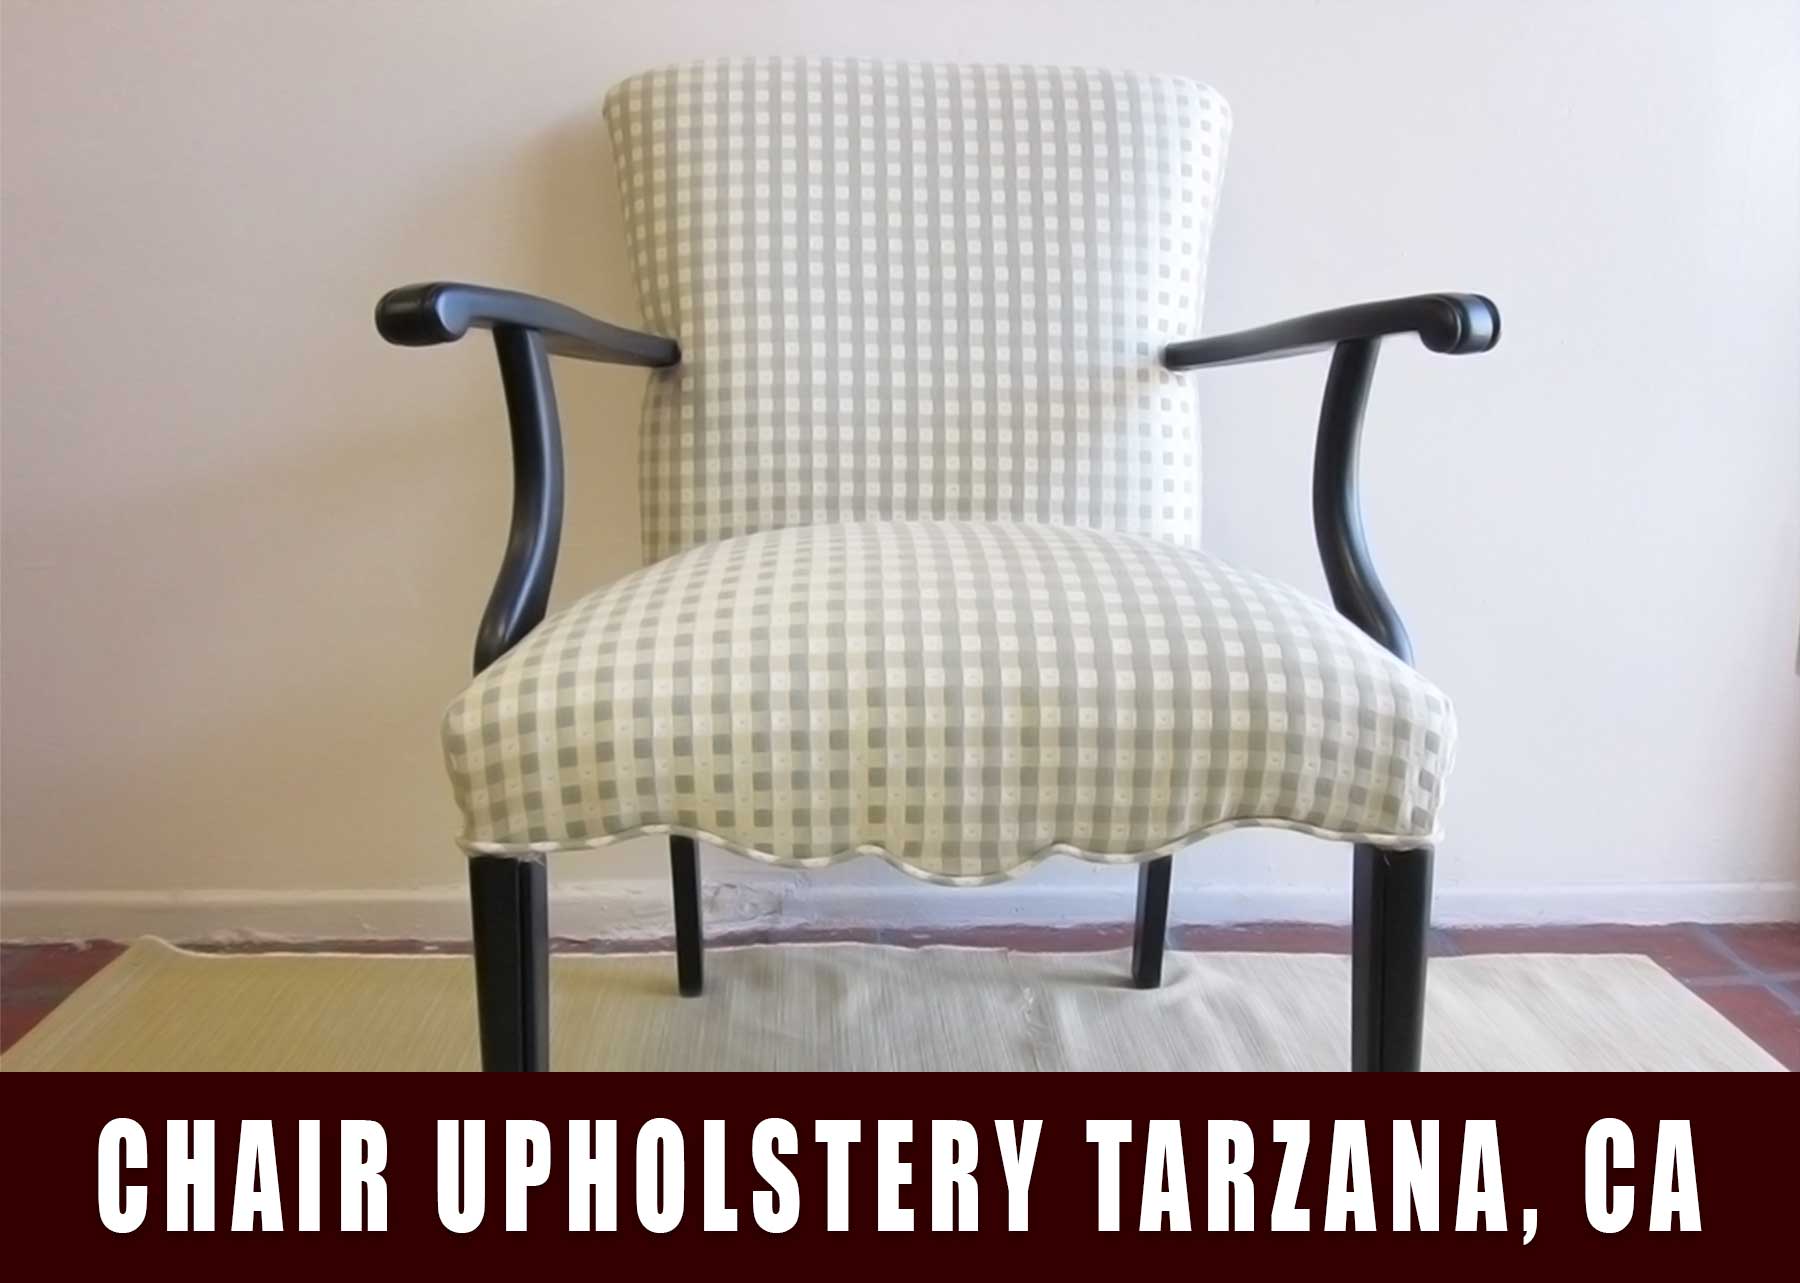 Chair upholstery Tarzana California. Chair Reupholstery Tarzana CA.